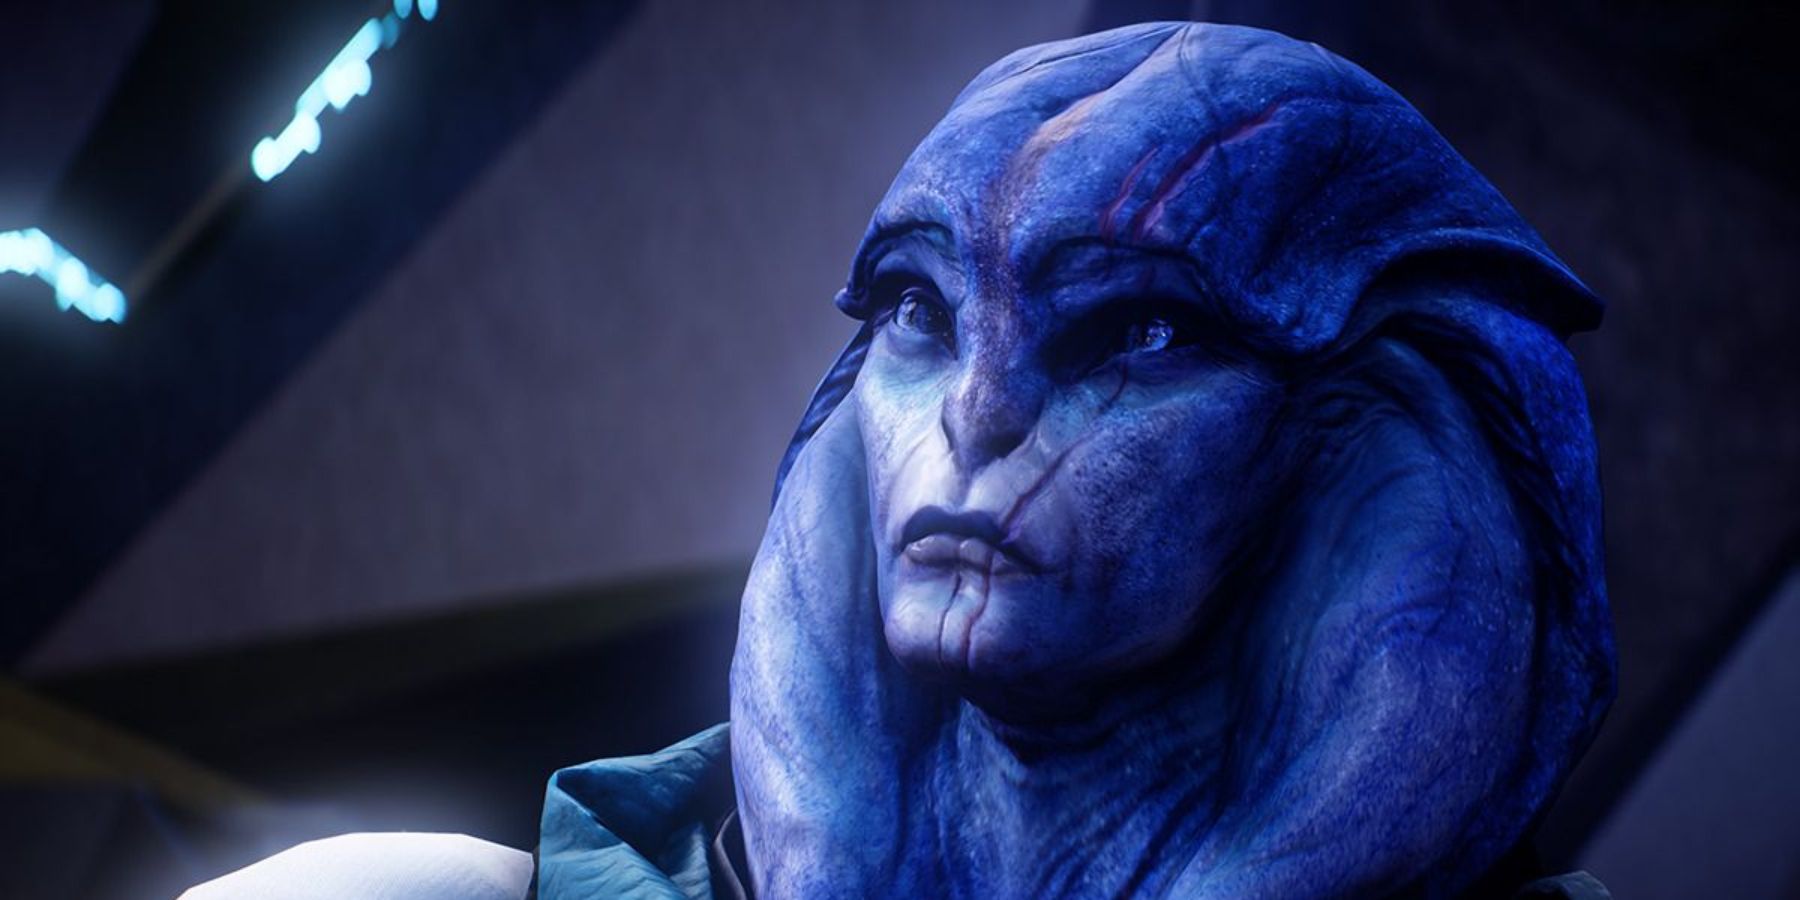 Evfra de Tershaav in Mass Effect Andromeda